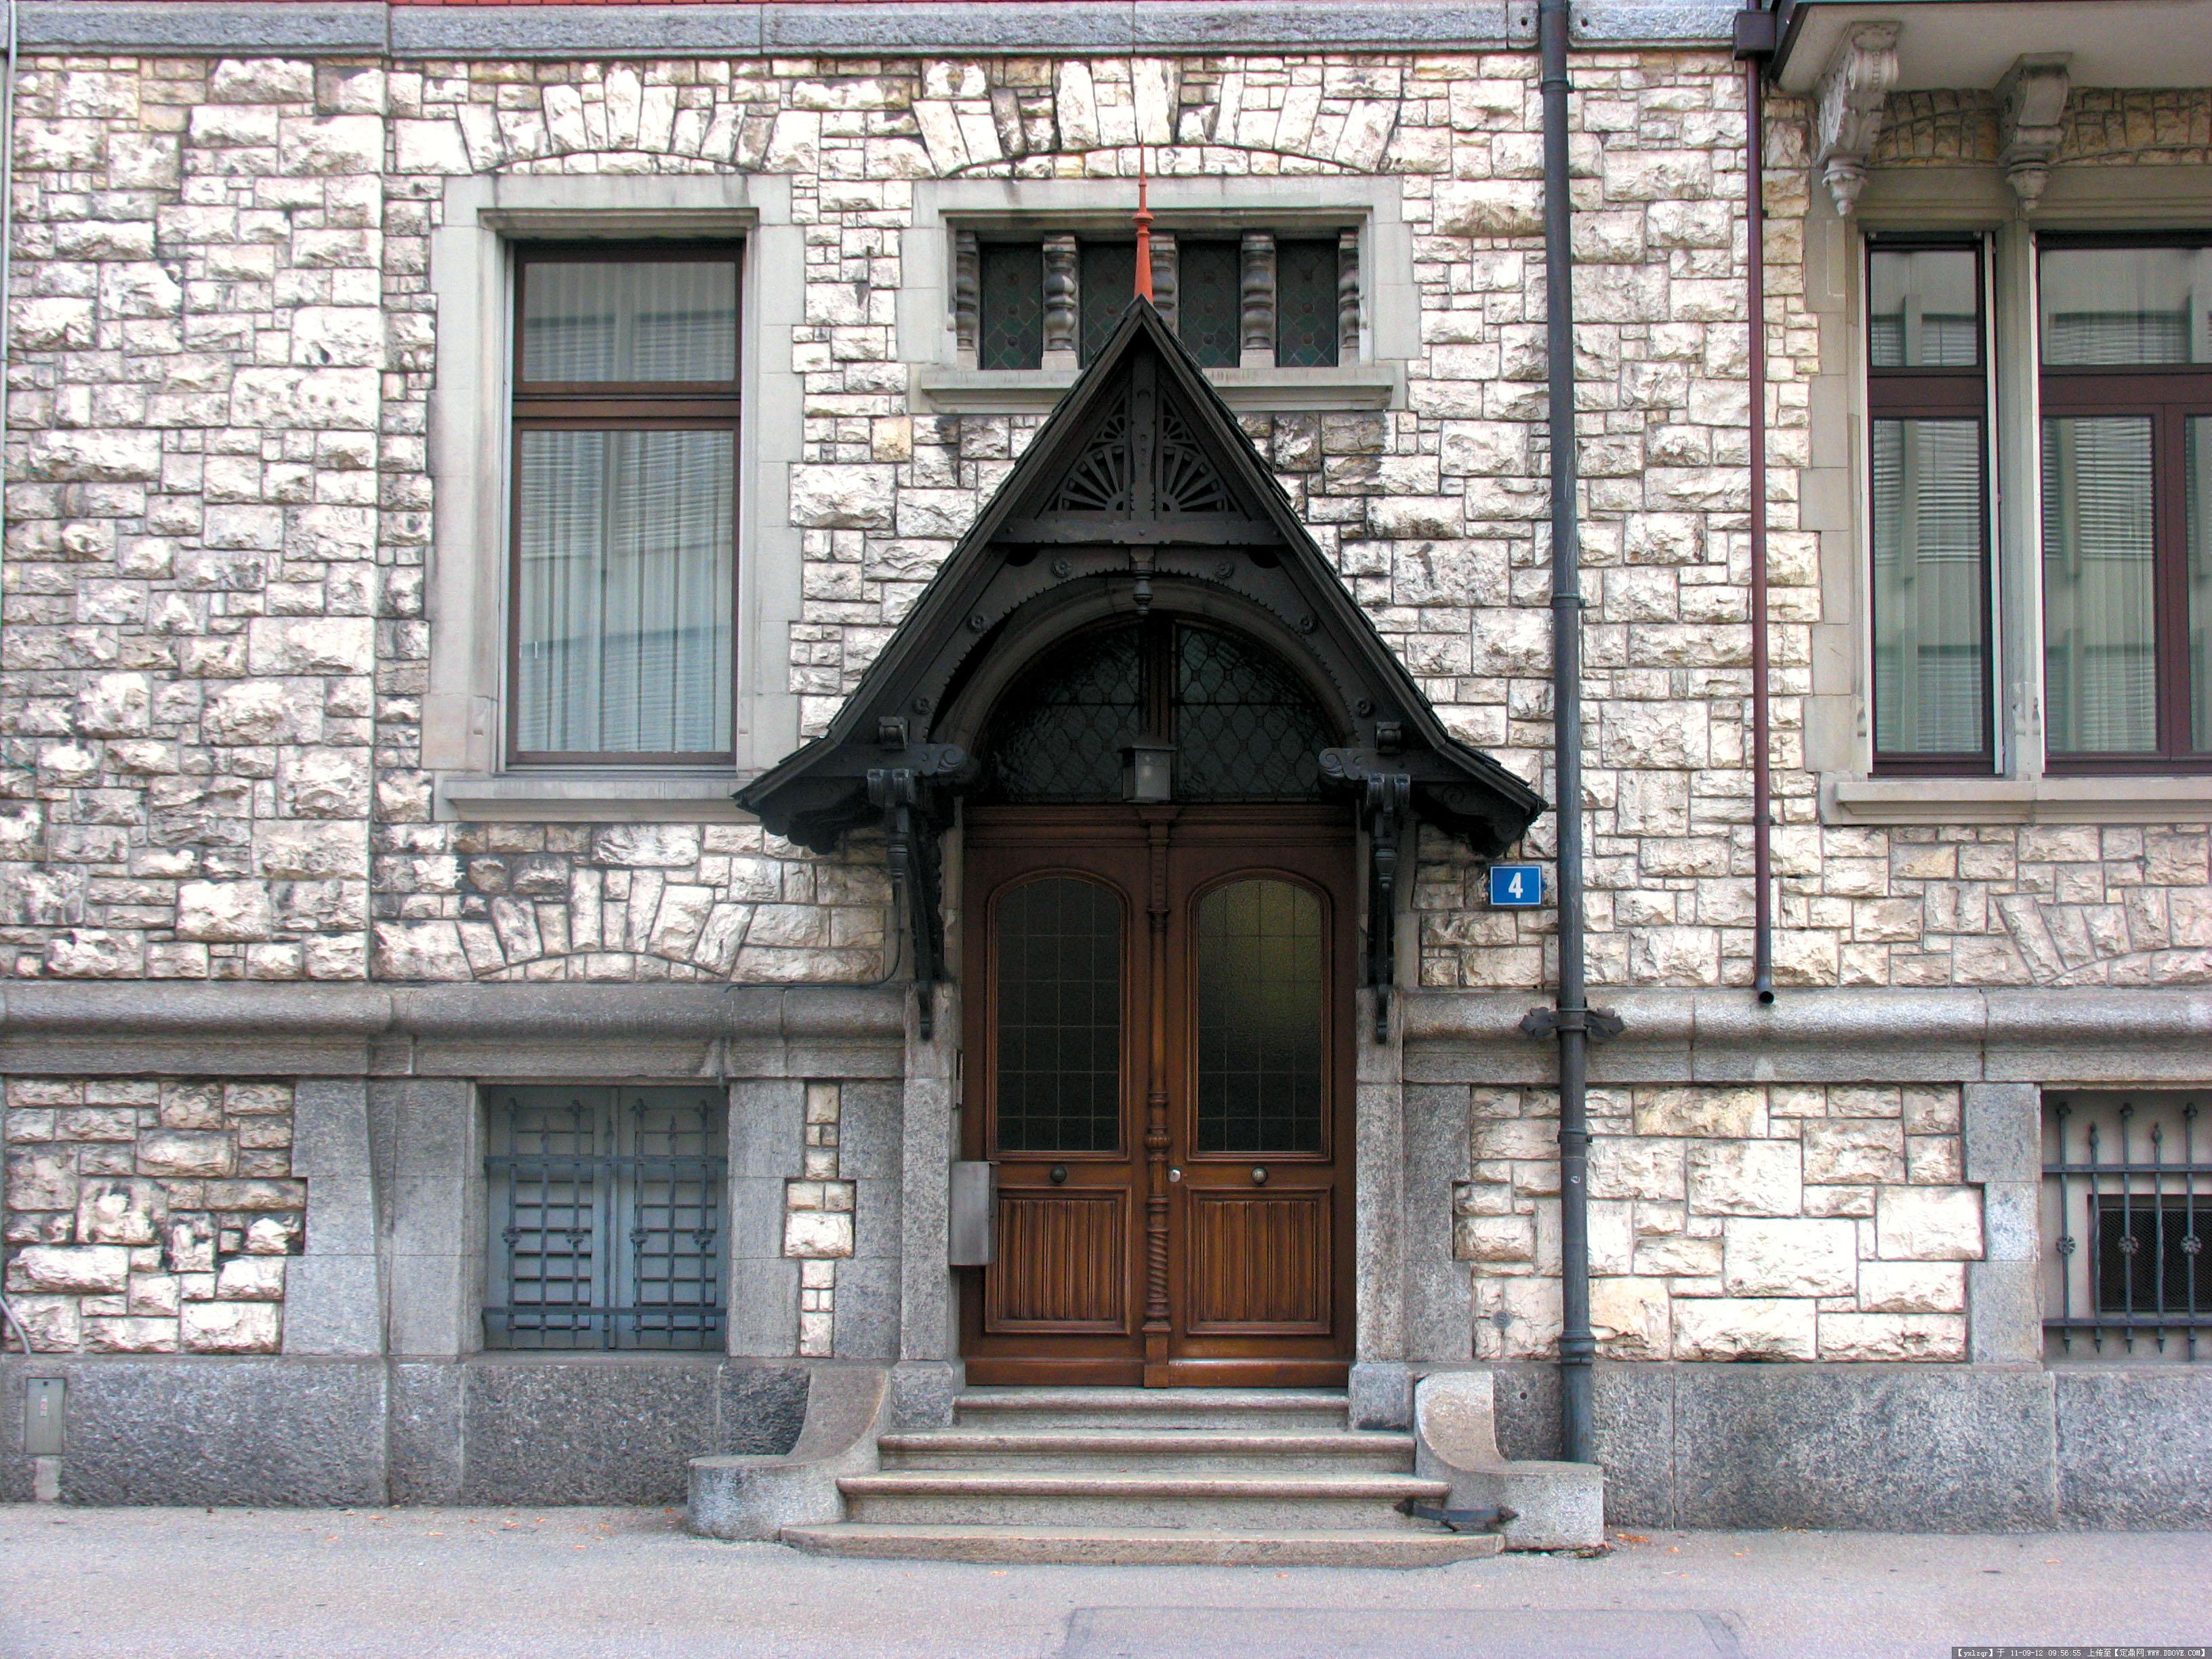 欧洲古典建筑景观 木质造型门